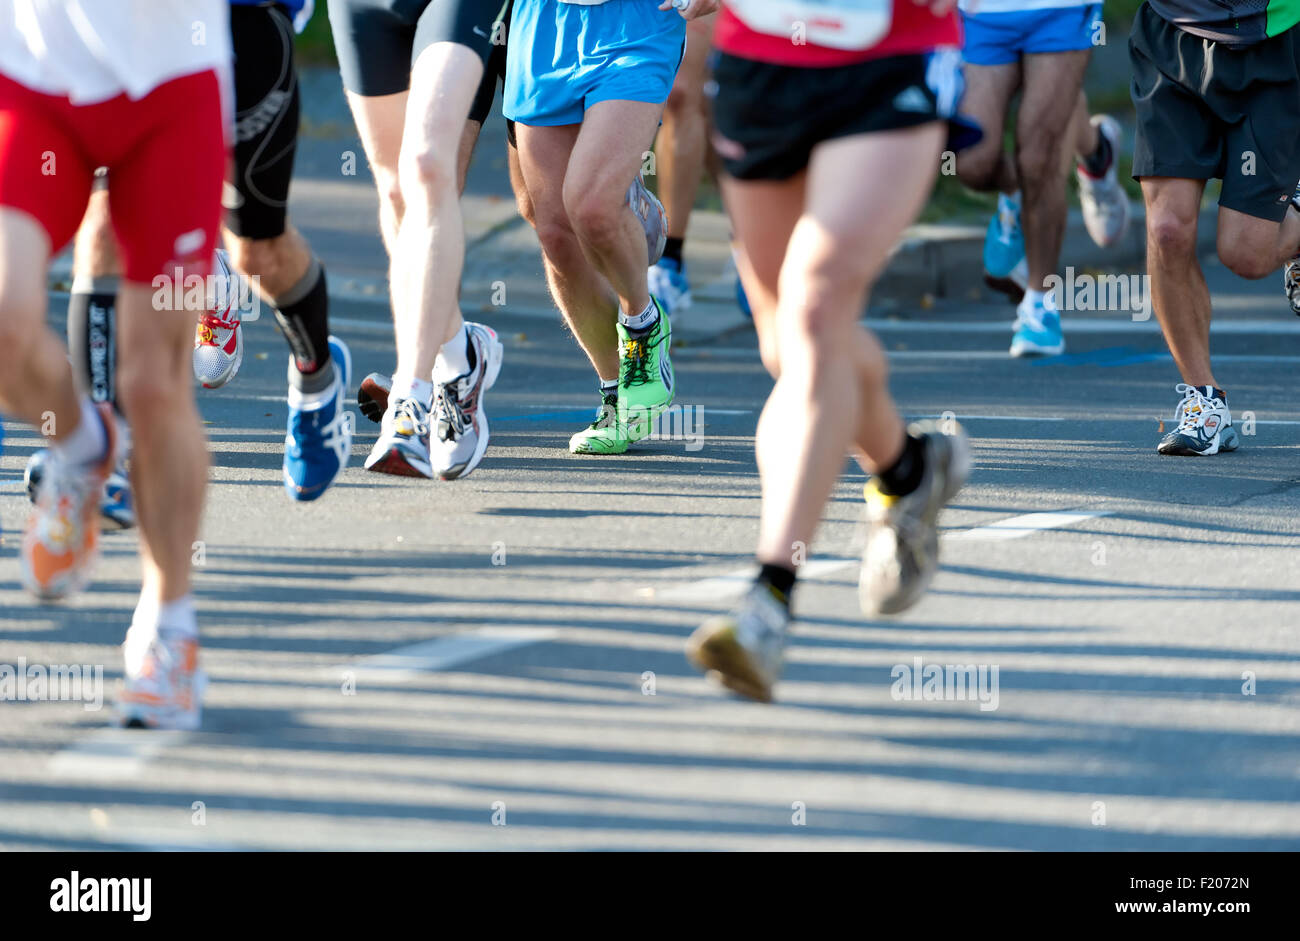 Beiner von Marathonläufern a Berlino Foto Stock